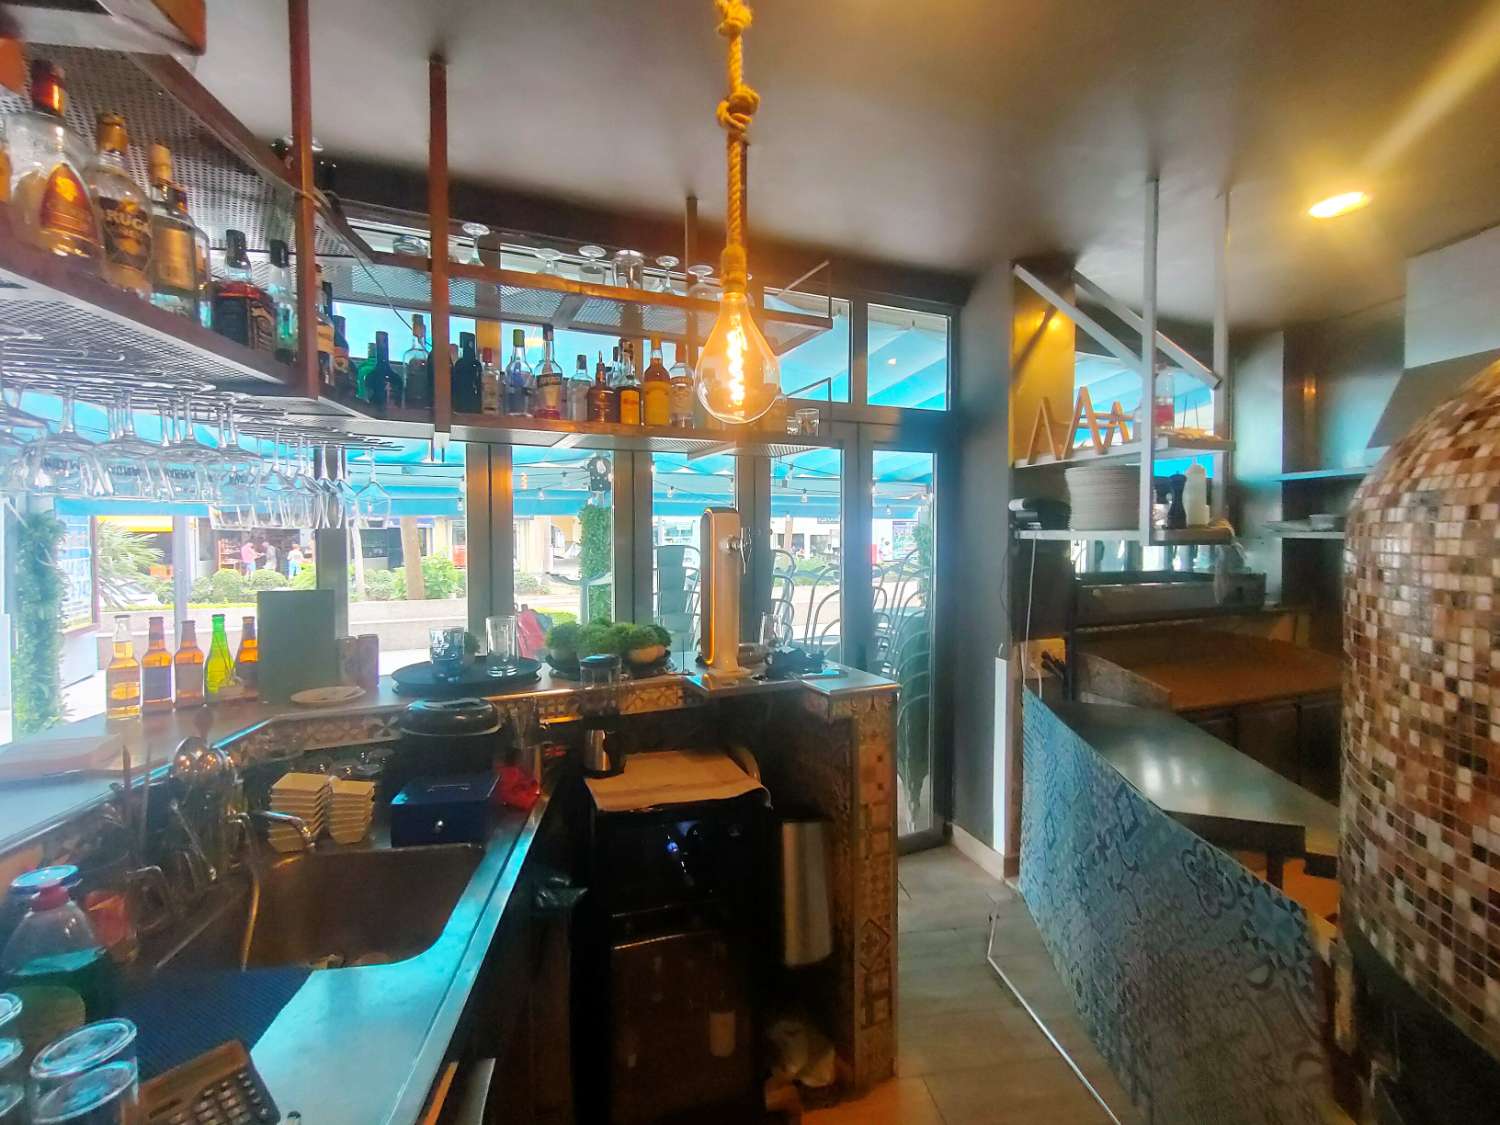 Pizzeria Cafetaria in Benalmadena Costa del Sol - Main Avenue